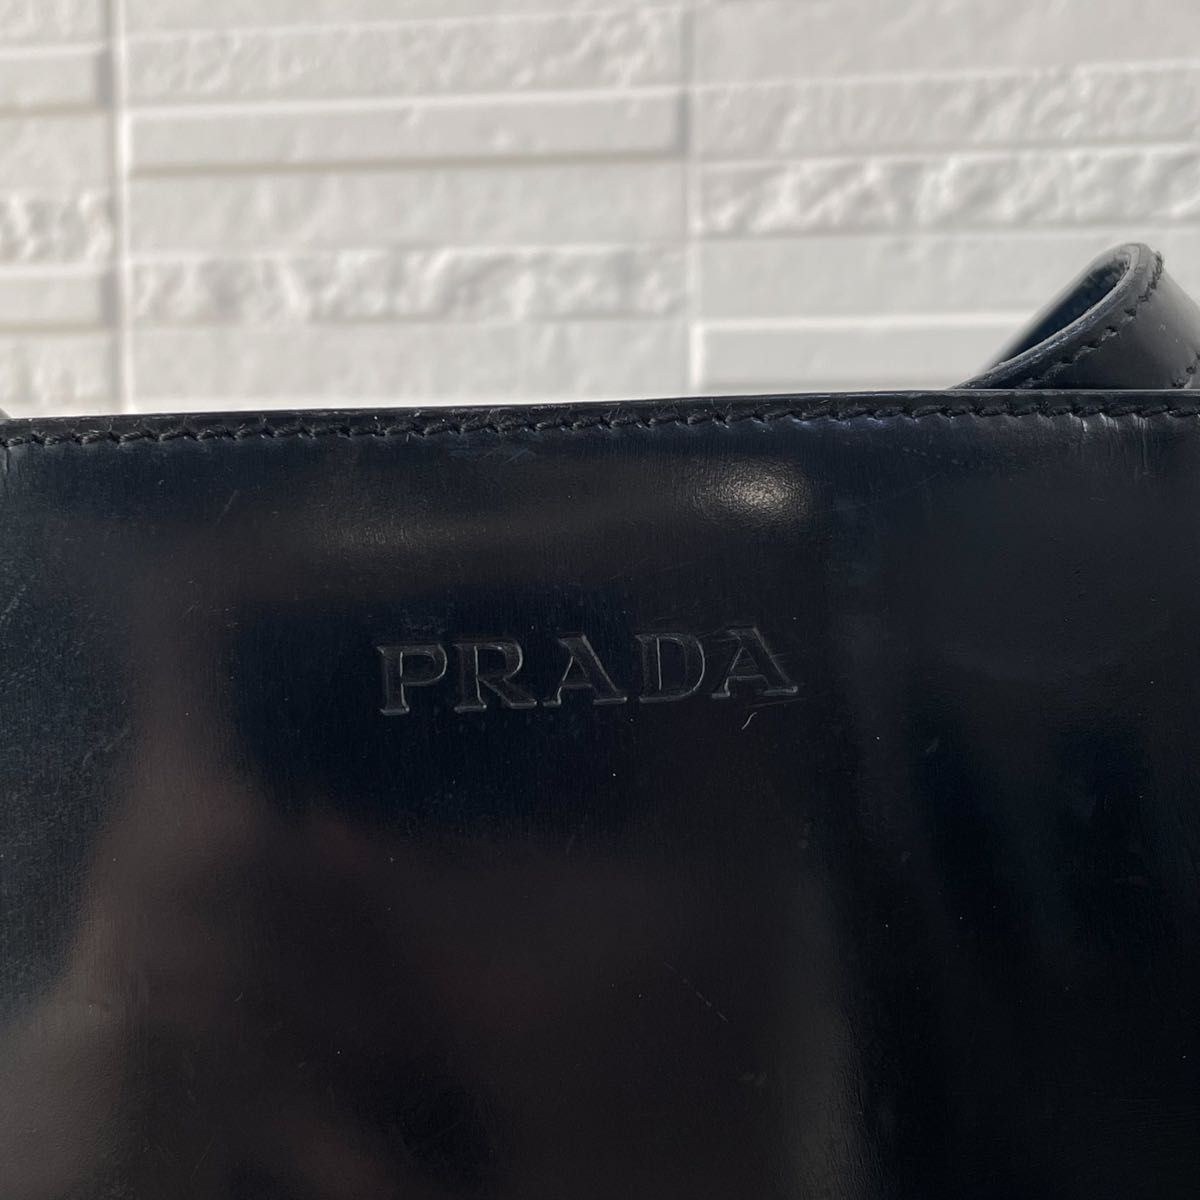 プラダ PRADA ロゴ エナメル パテント レザー トート ハンド バッグ 黒